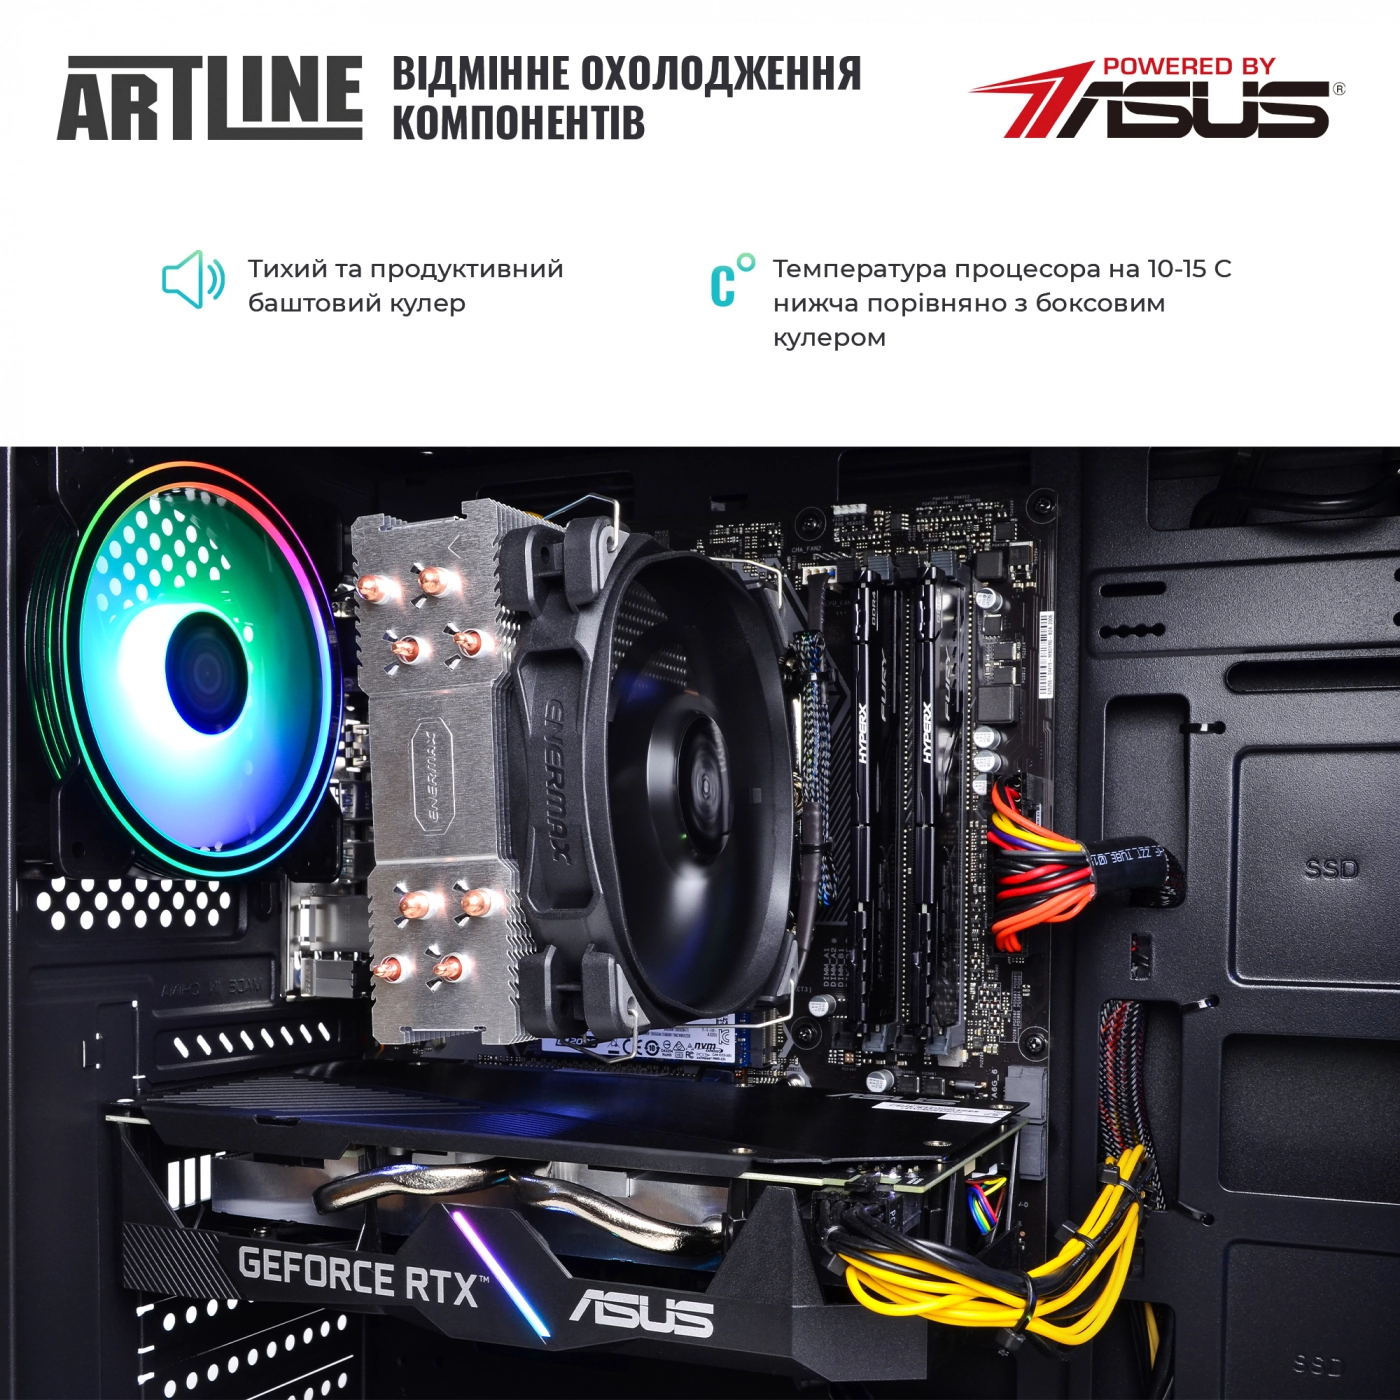 Купить Компьютер ARTLINE Gaming X68v17 - фото 8